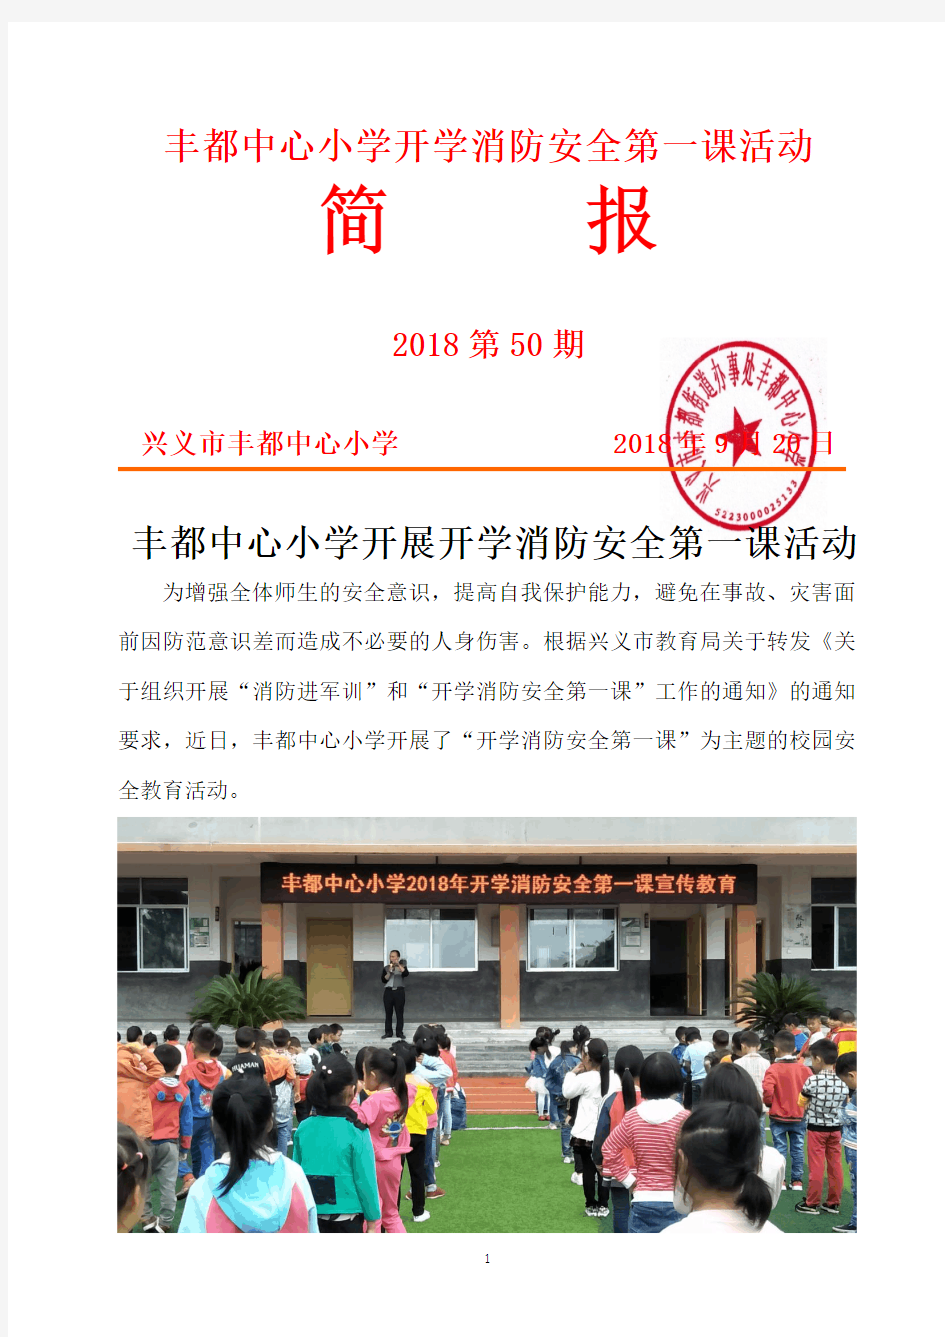 丰都中心小学开学消防安全第一课活动简报 (2018年第50期)